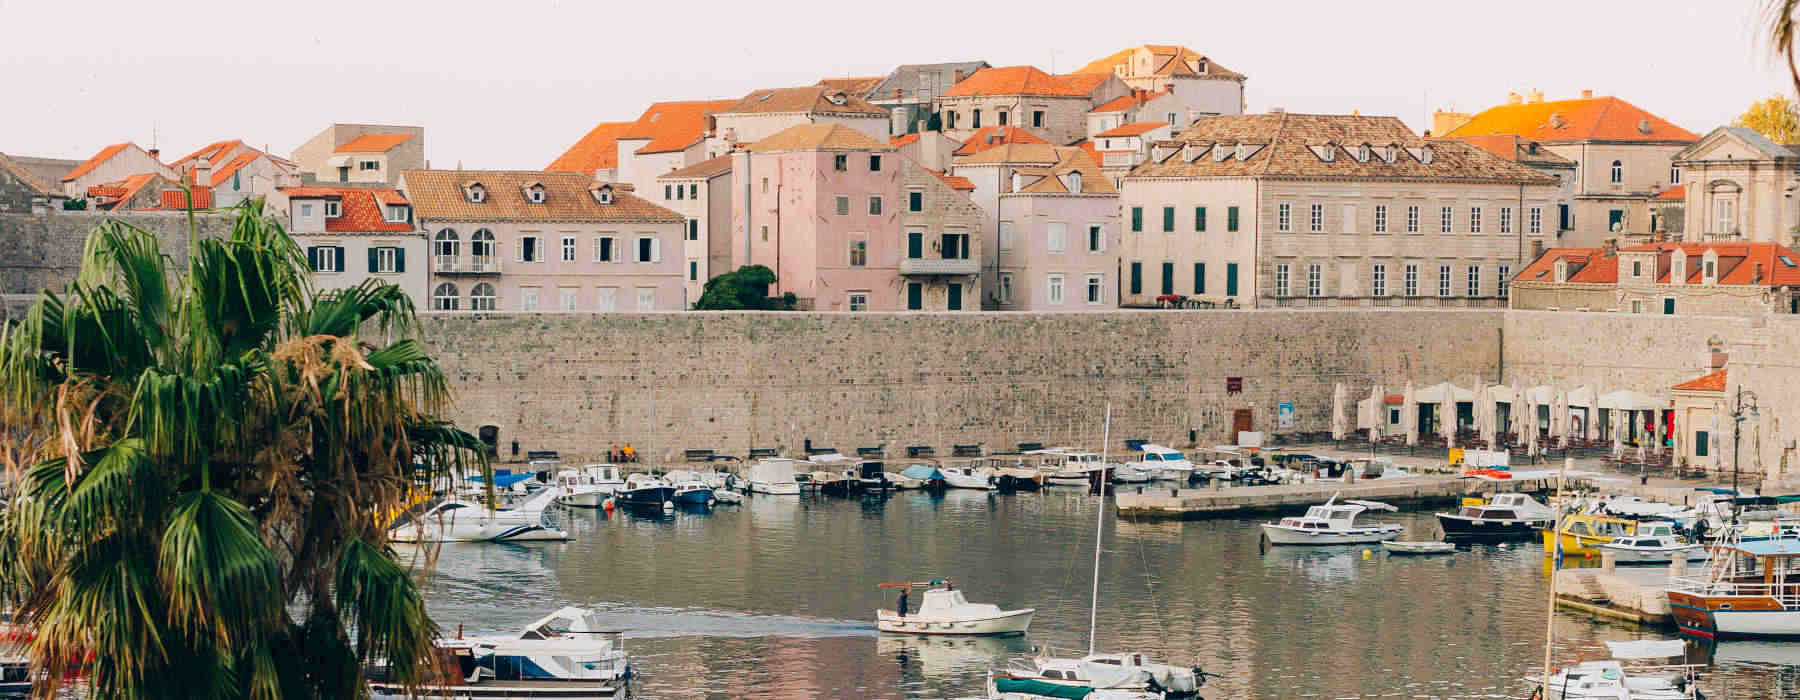 Dubrovnik<br class="hidden-md hidden-lg" /> Holidays